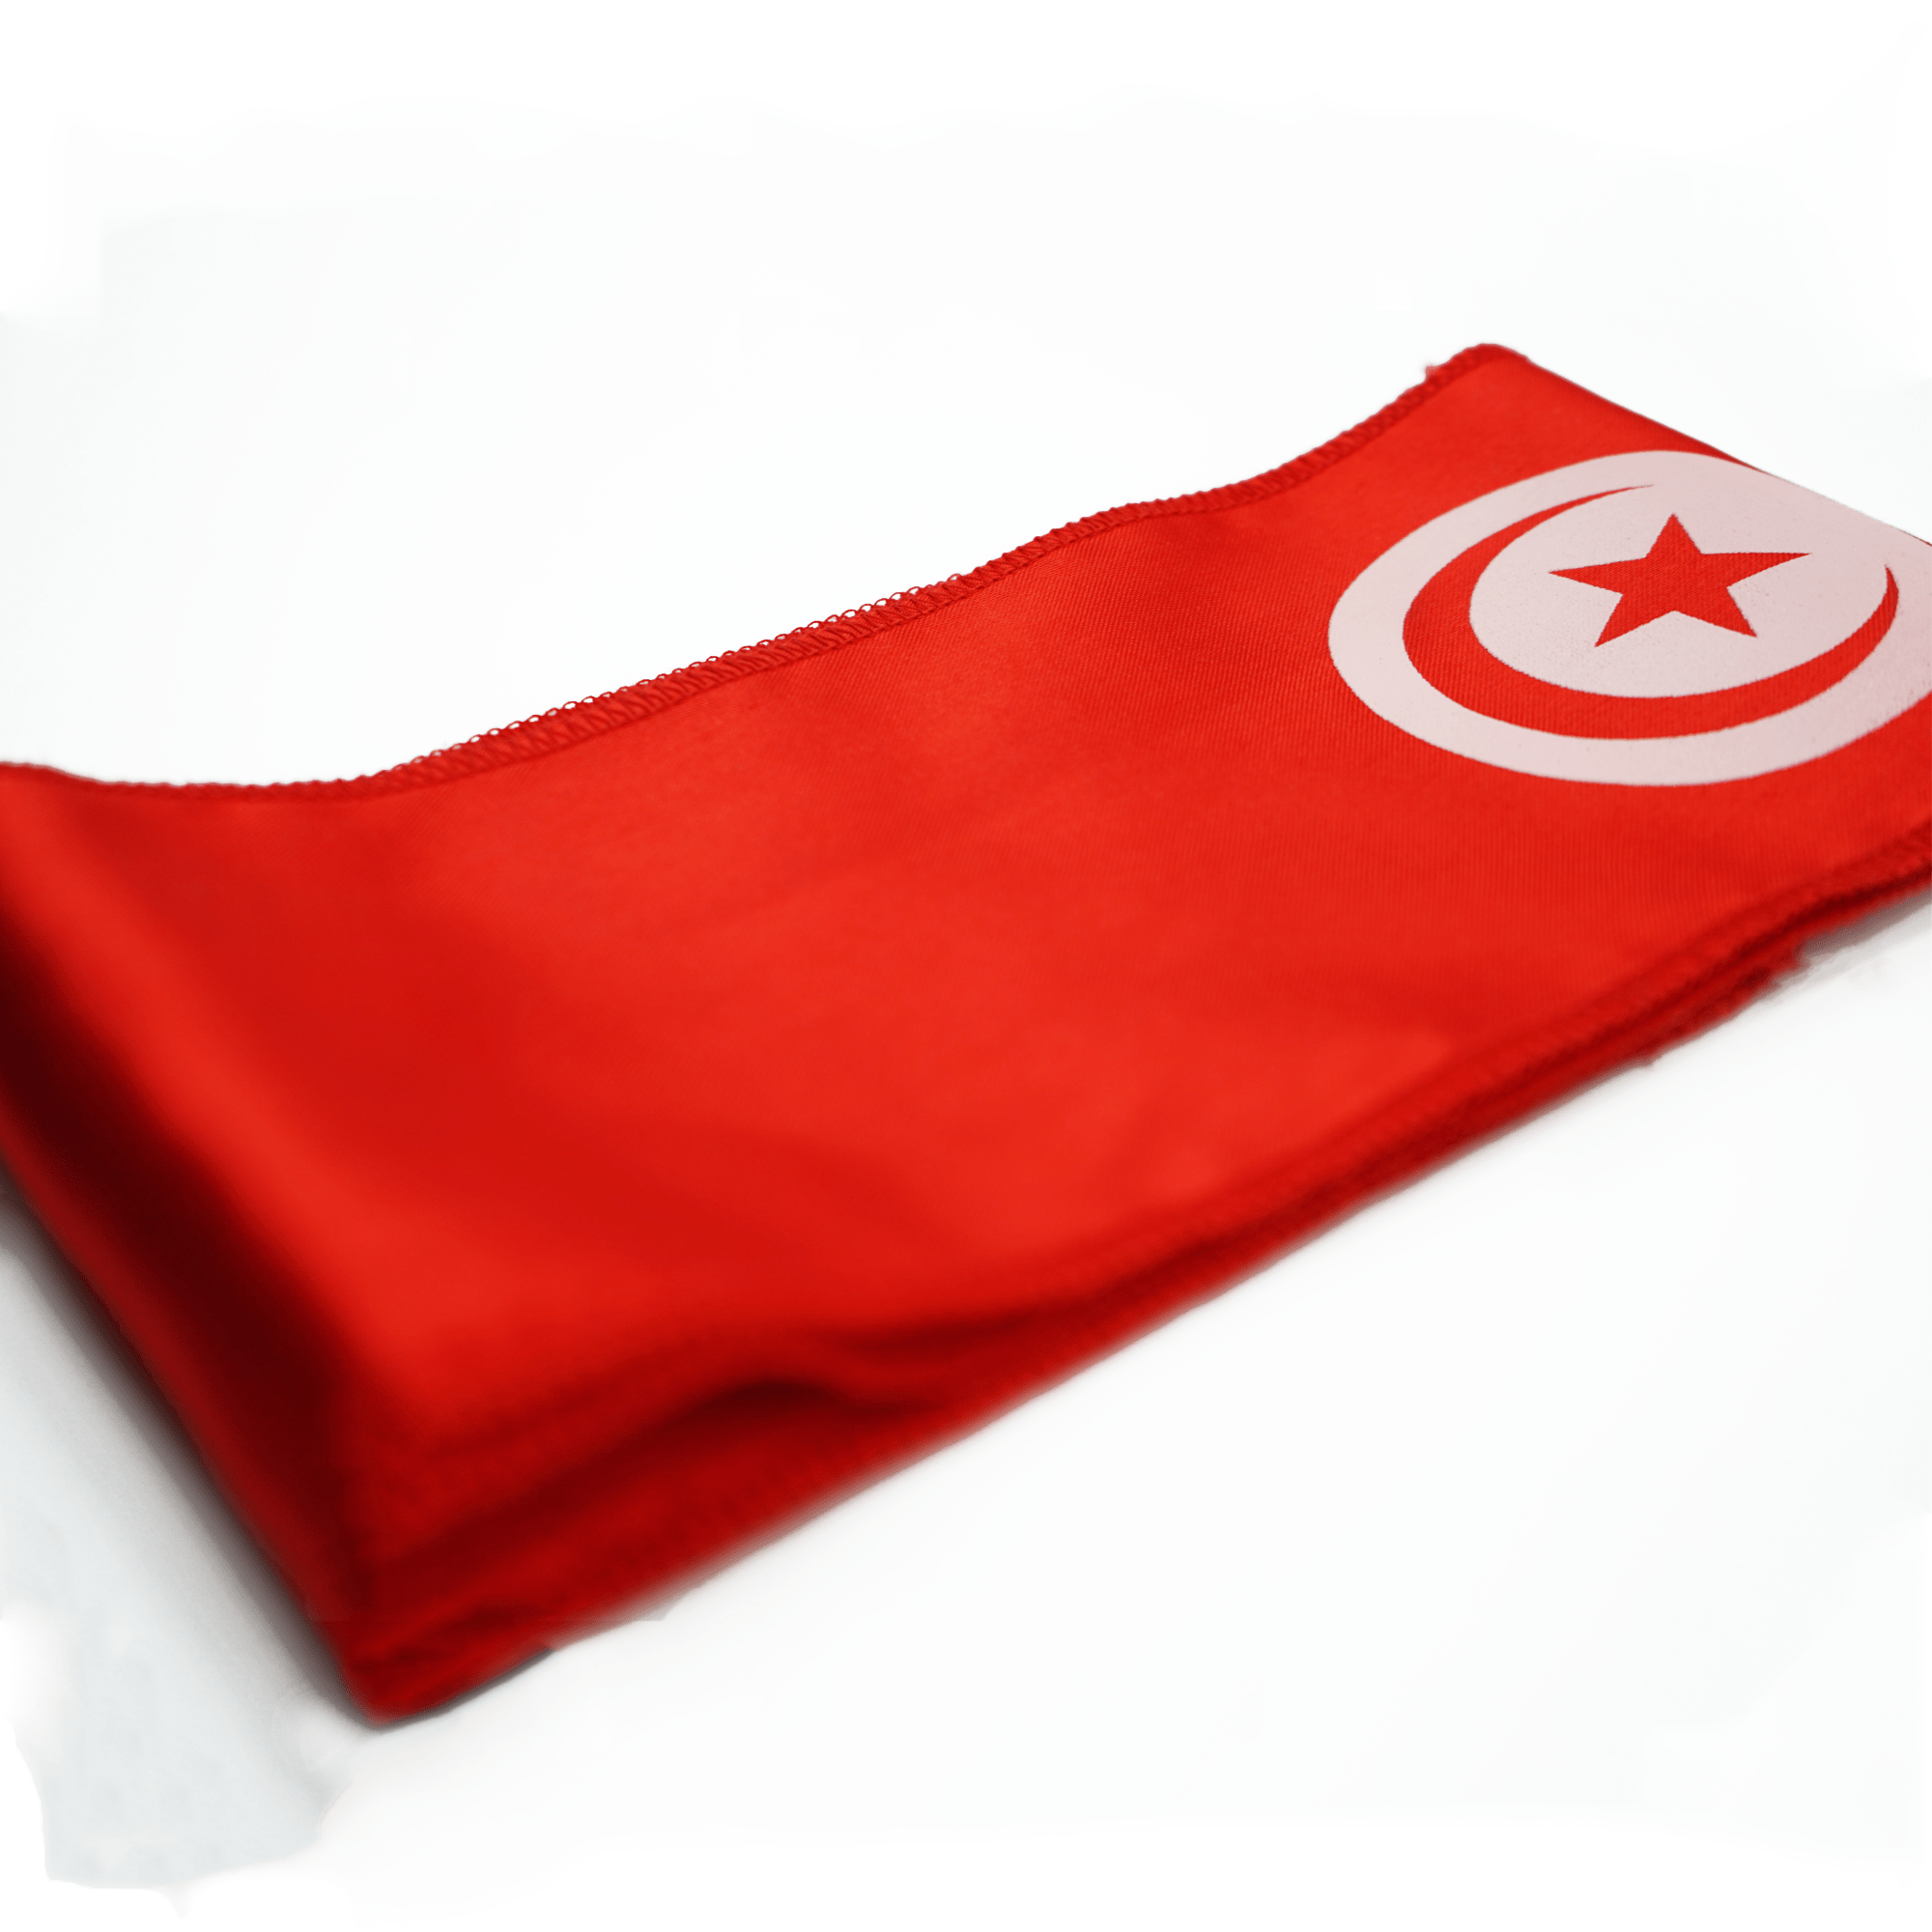 Flag of Tunisia rectangular